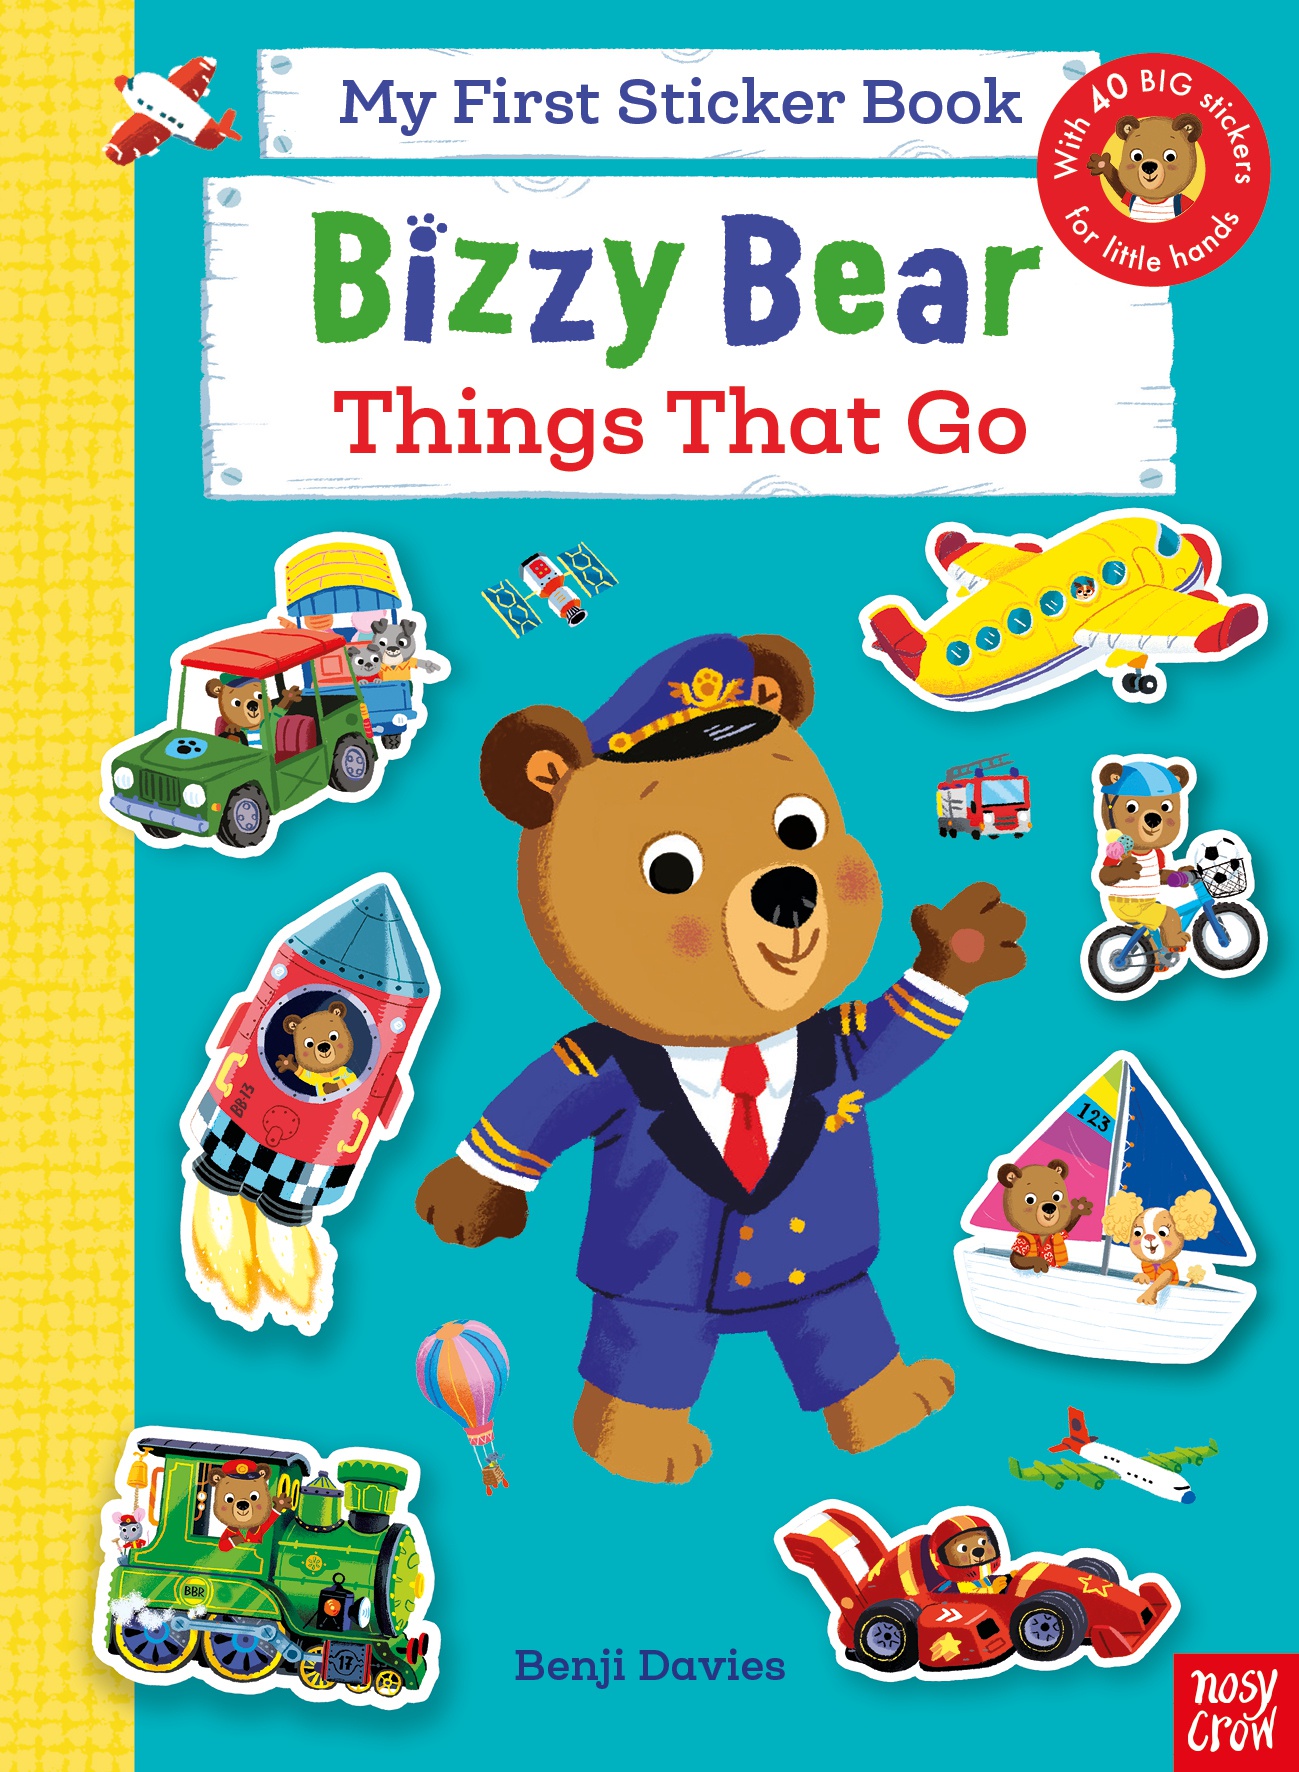 Εκδόσεις Nosy Crow - Bizzy Bear:My First Sticker Book Things That Go - Benji Davies